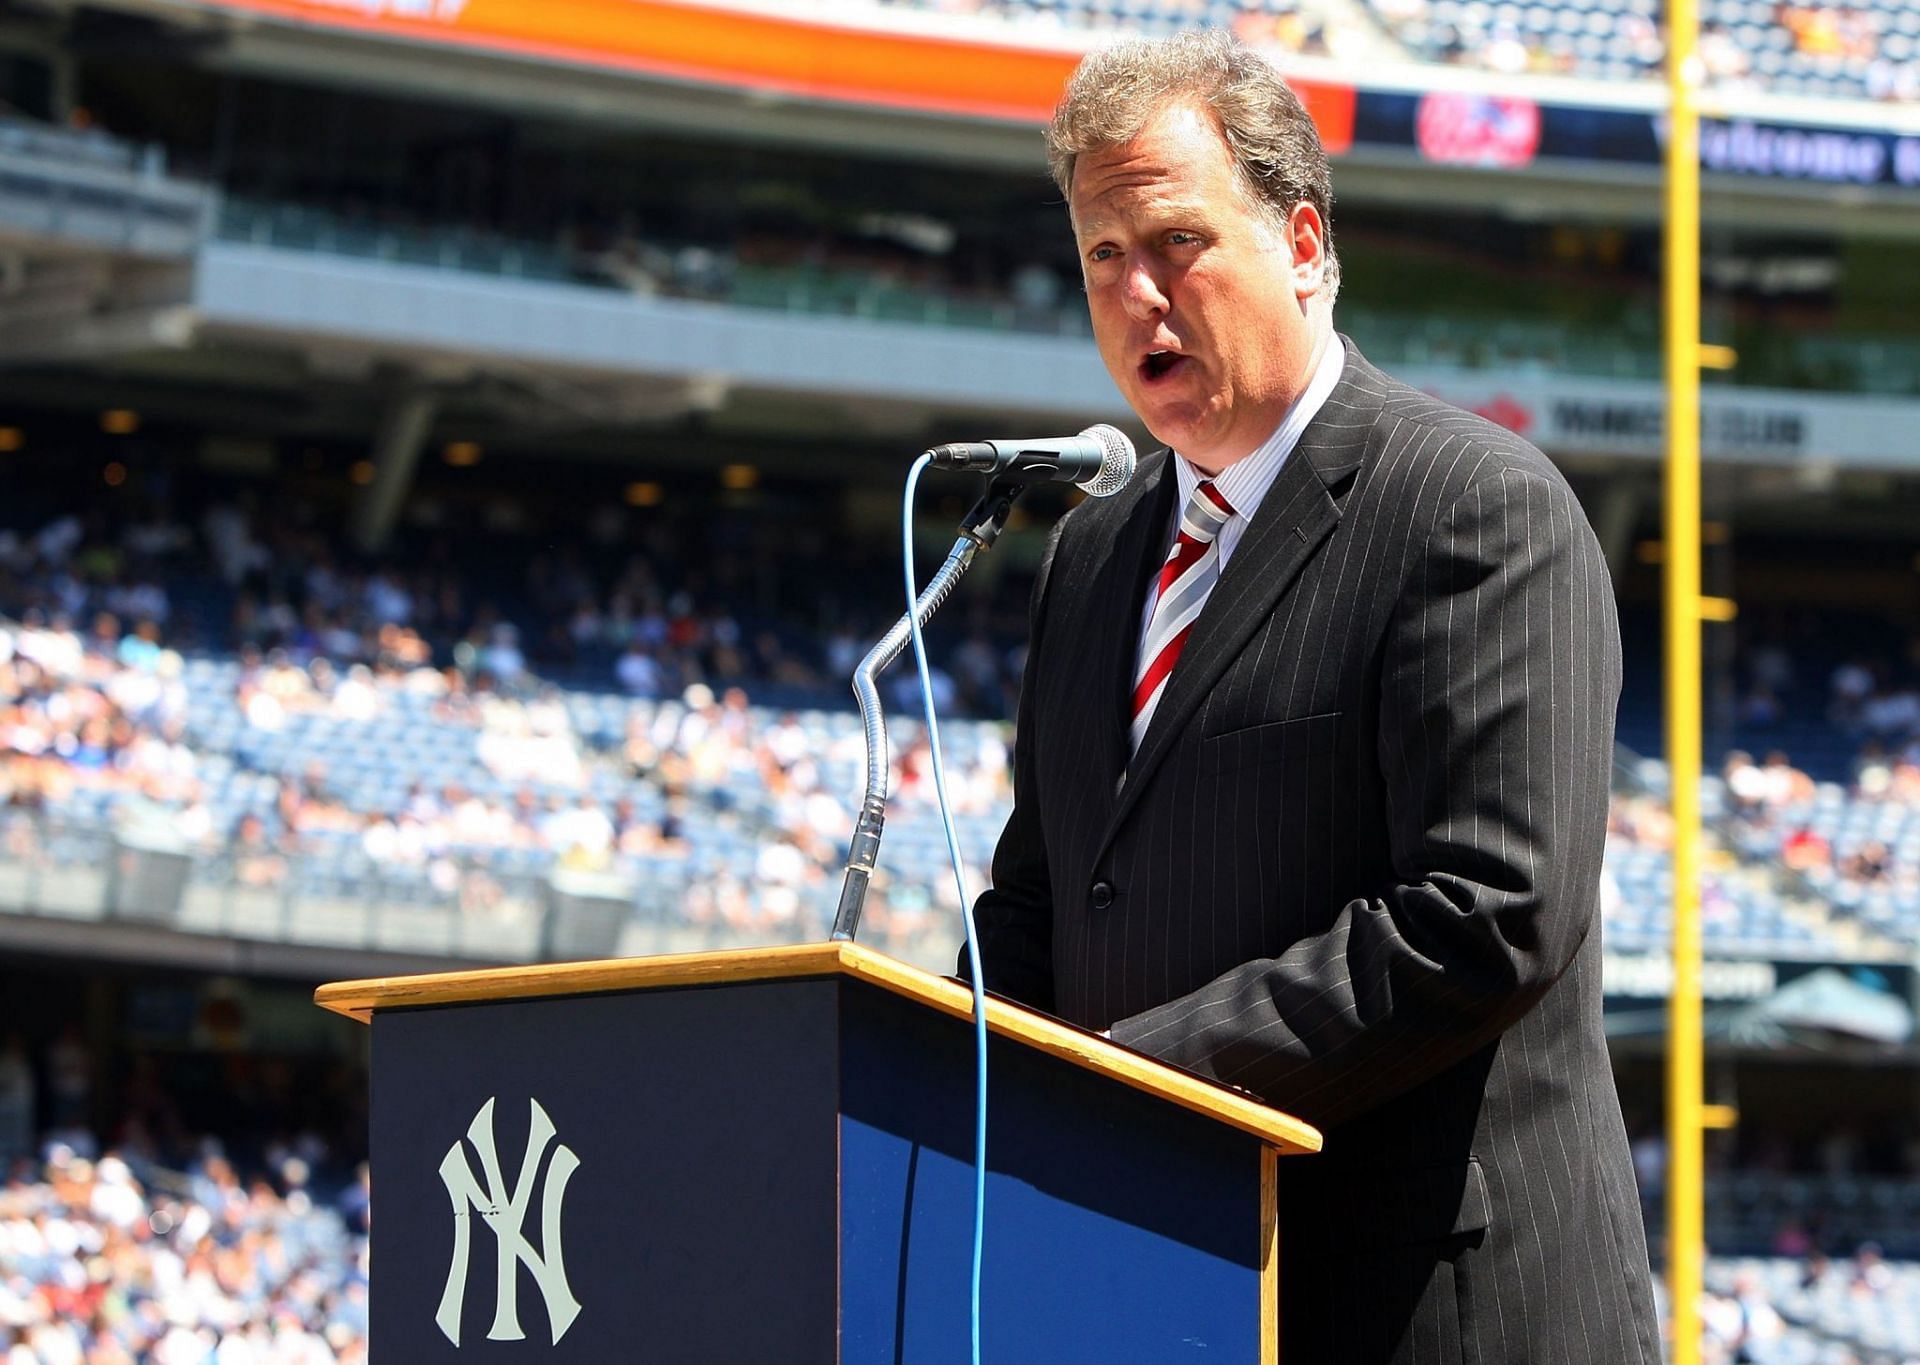 New York Yankees broadcaster Michael Kay